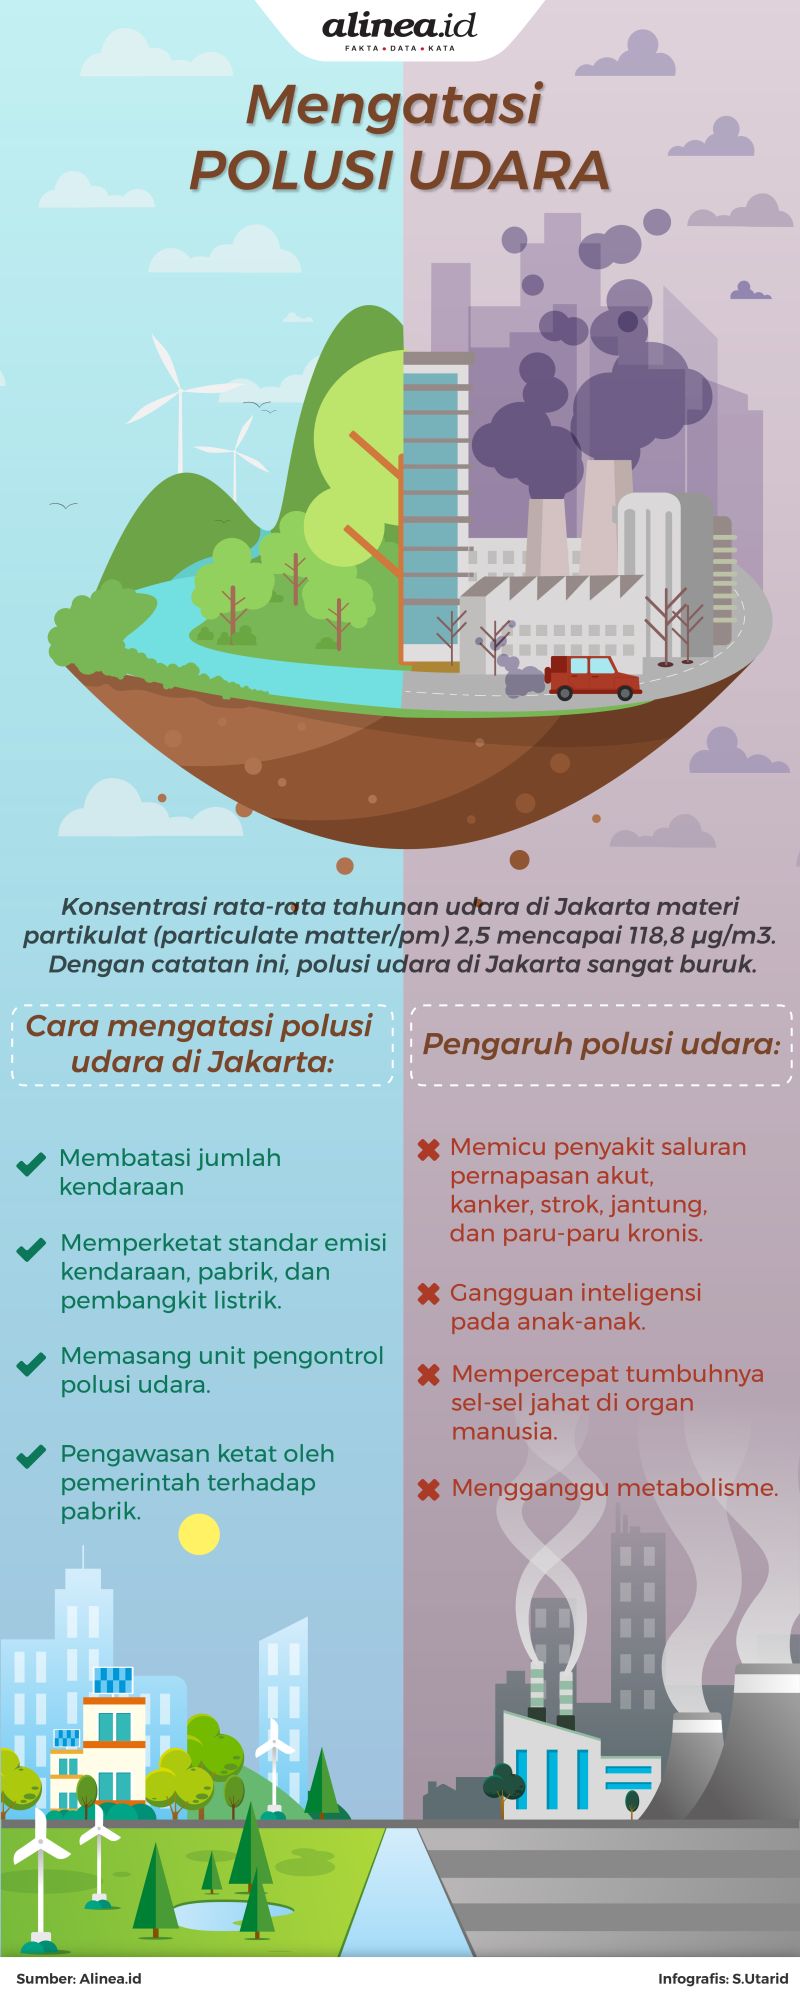 Jakarta termasuk ke dalam kota utama di dunia yang berpolusi udara paling buruk.